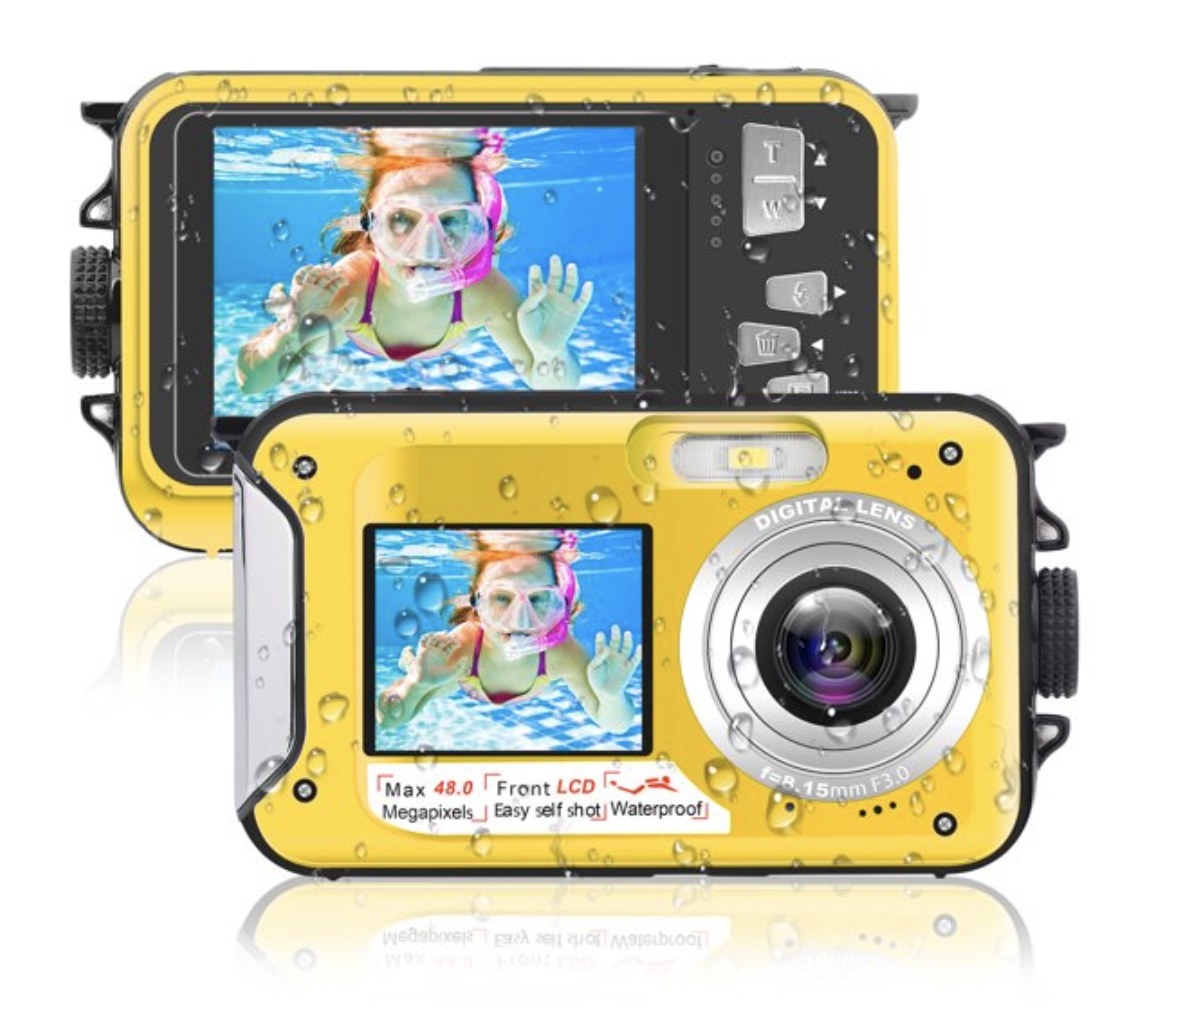 A yellow waterproof camera